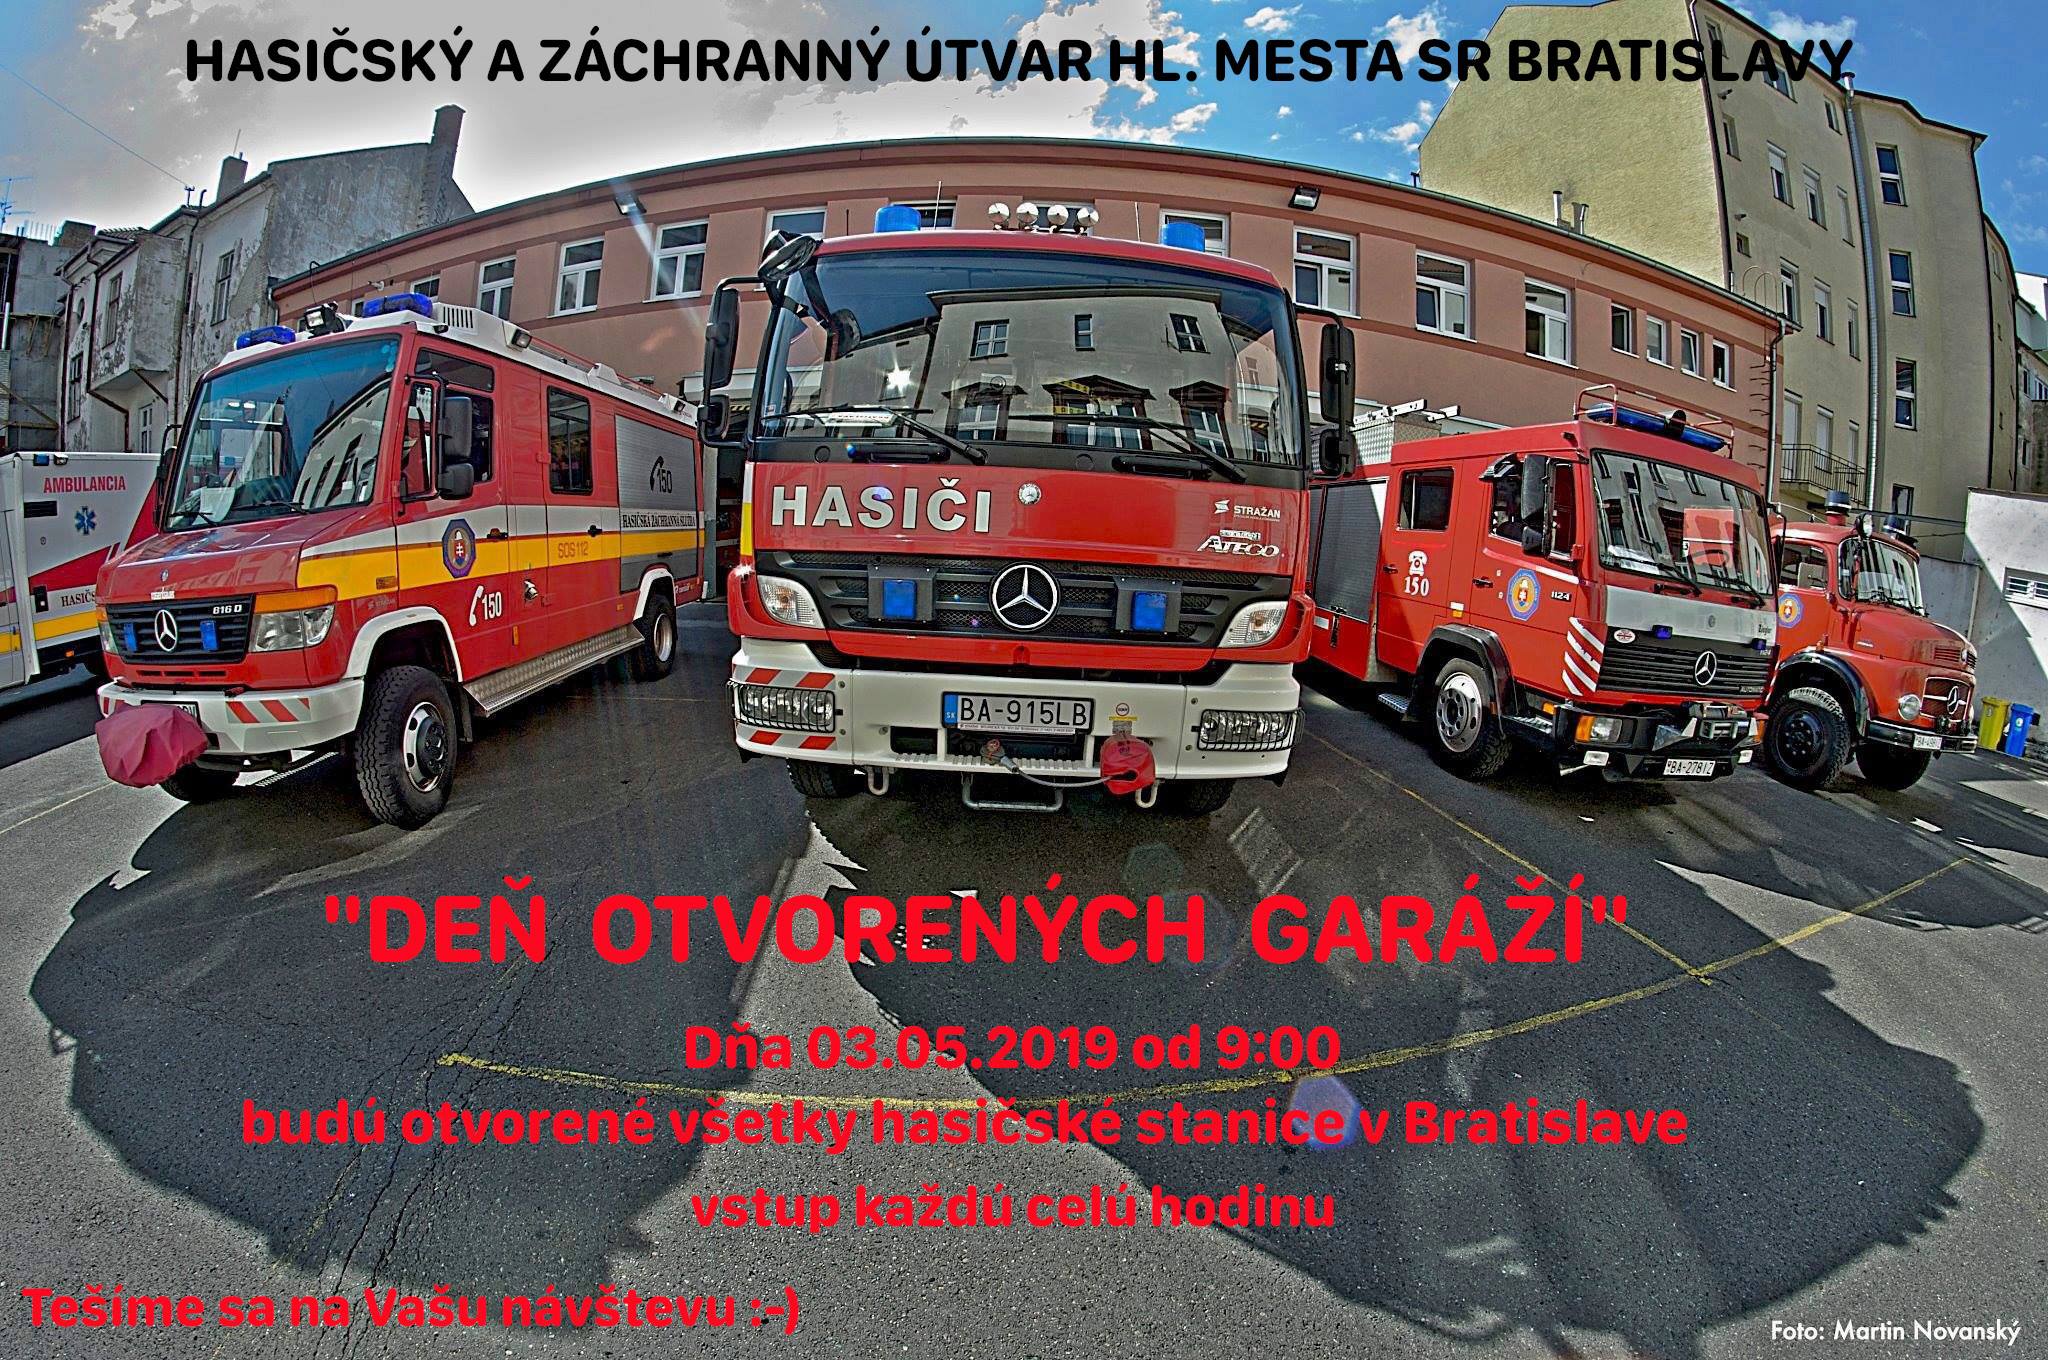 Deň otvorených garáží 2019 Bratislava - Hasičský a záchranný útvar hlavného mesta Slovenskej republiky